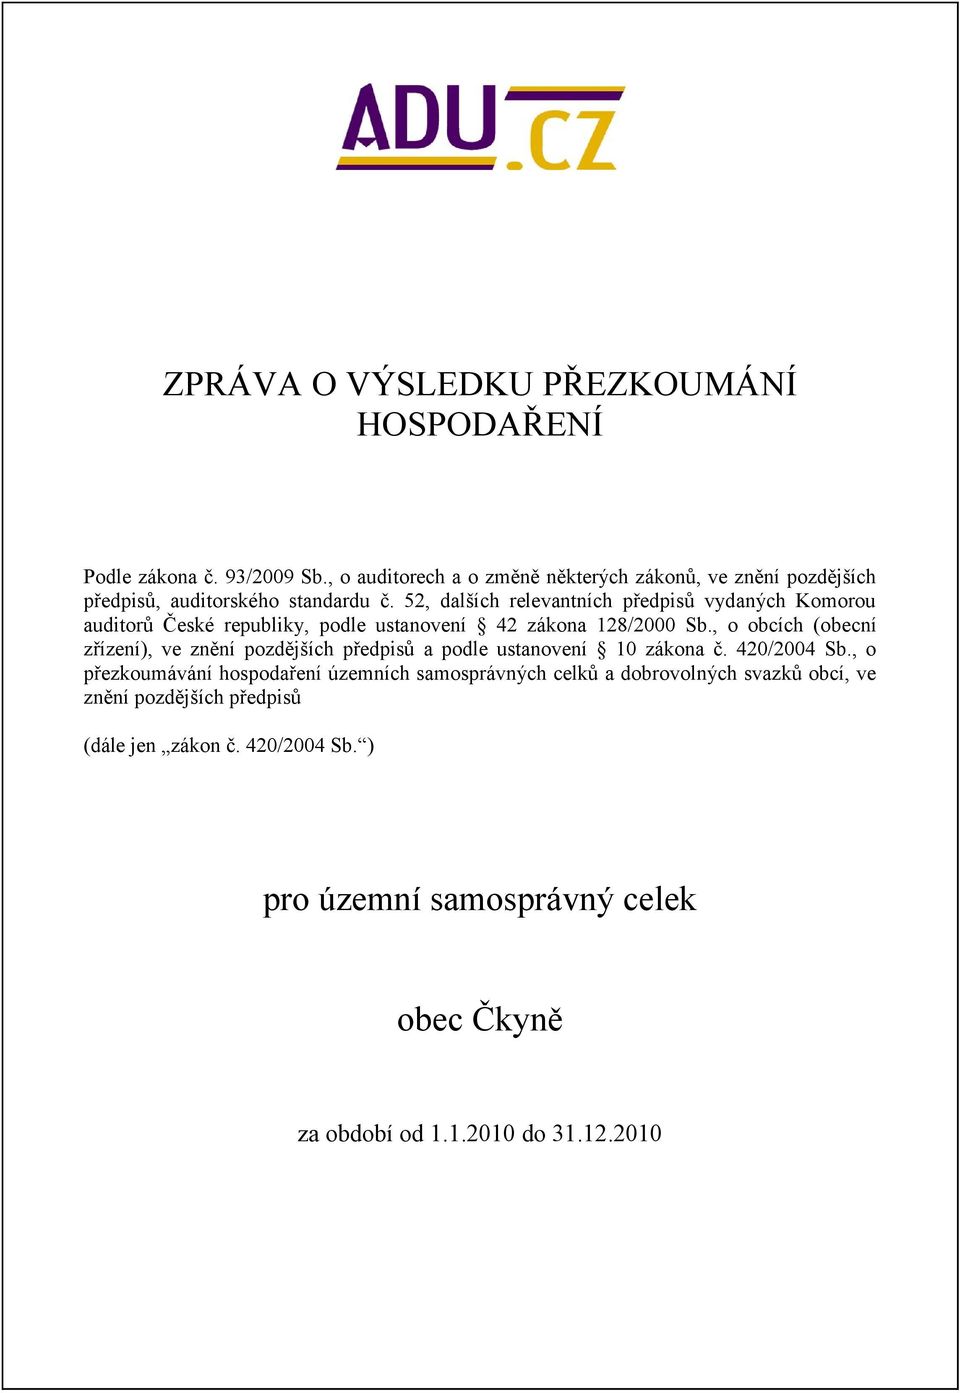 52, dalších relevantních předpisů vydaných Komorou auditorů České republiky, podle ustanovení 42 zákona 128/2000 Sb.